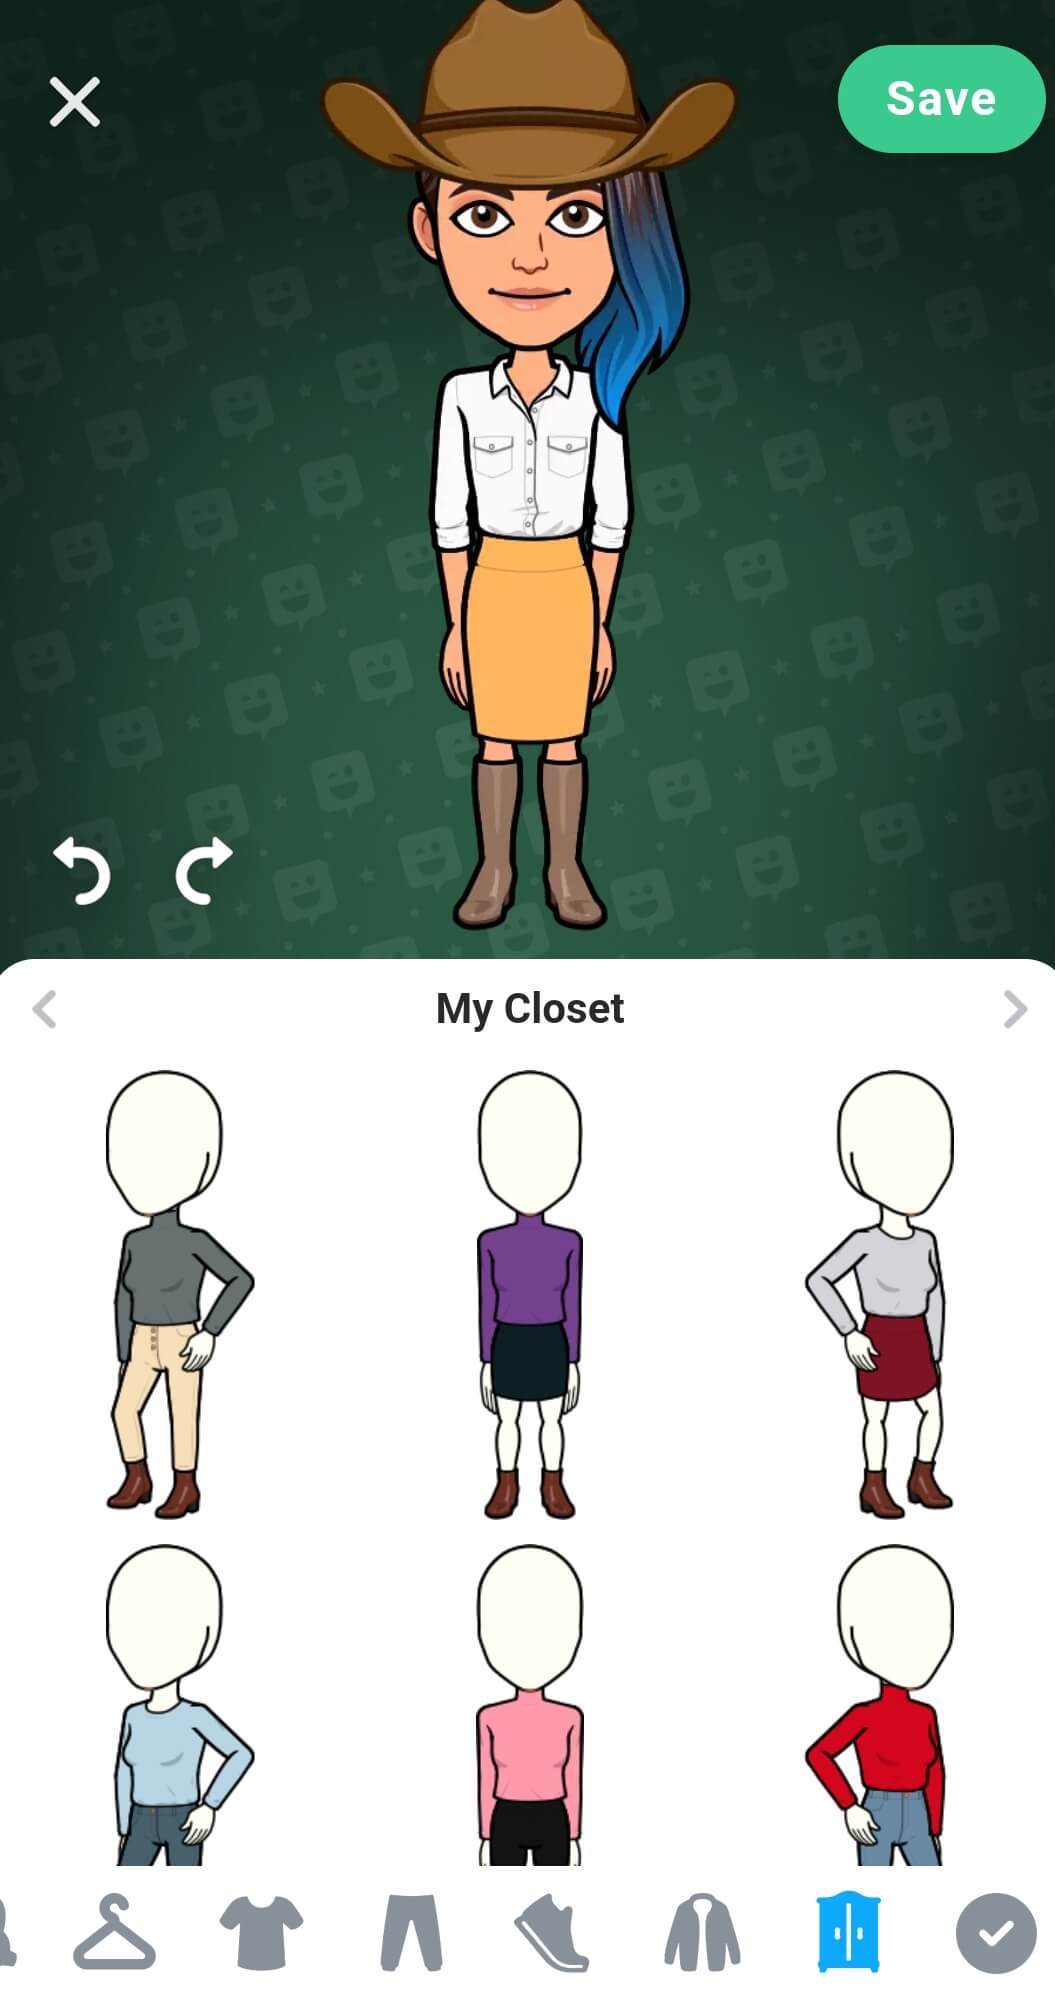 Eine Vielzahl von Outfits wird im Avatar-Kleiderschrank in der unteren Hälfte des Bildschirms gespeichert. Die Speichern-Schaltfläche befindet sich in der oberen rechten Ecke.